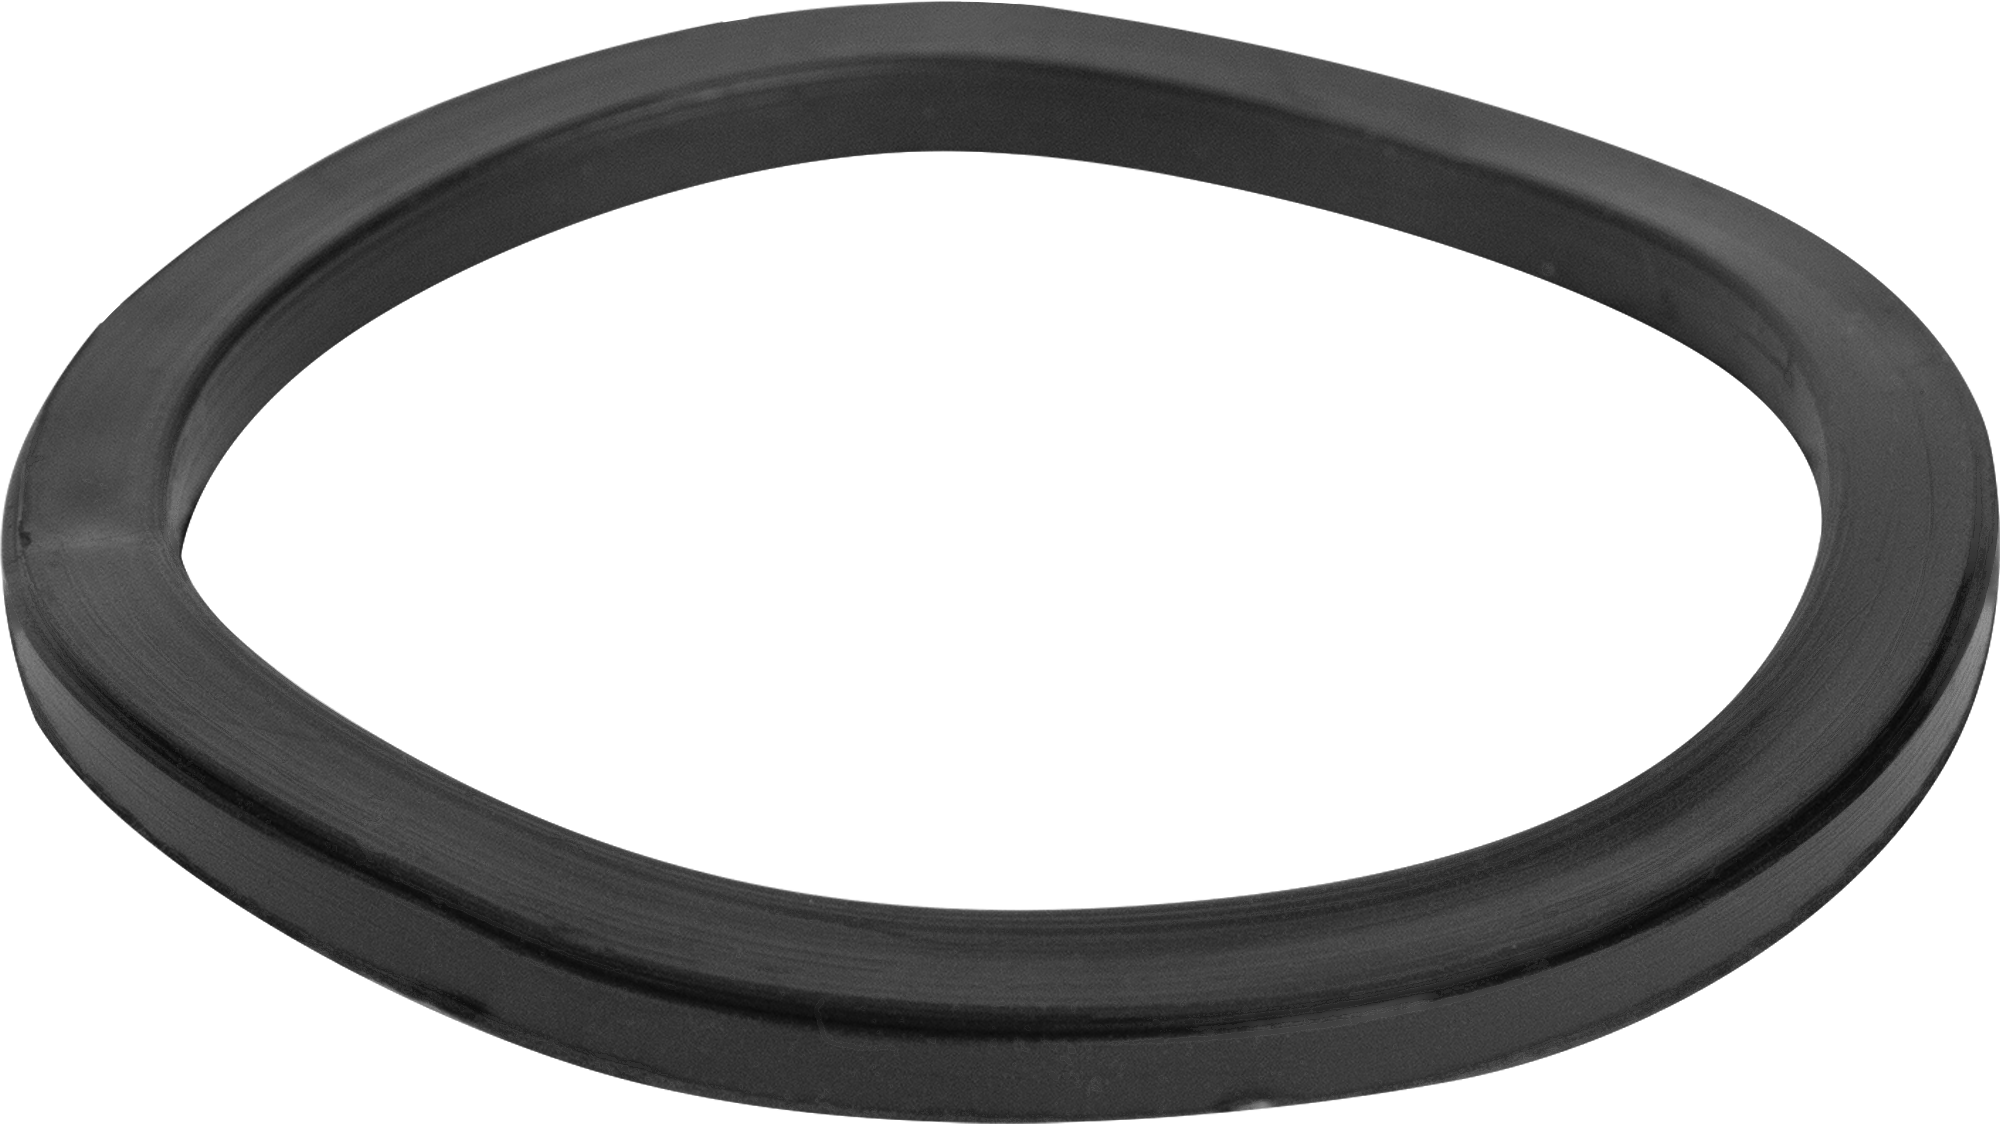  кольцо Симтек для сифона 55x65х4 мм по цене 5.1 ₽/шт .